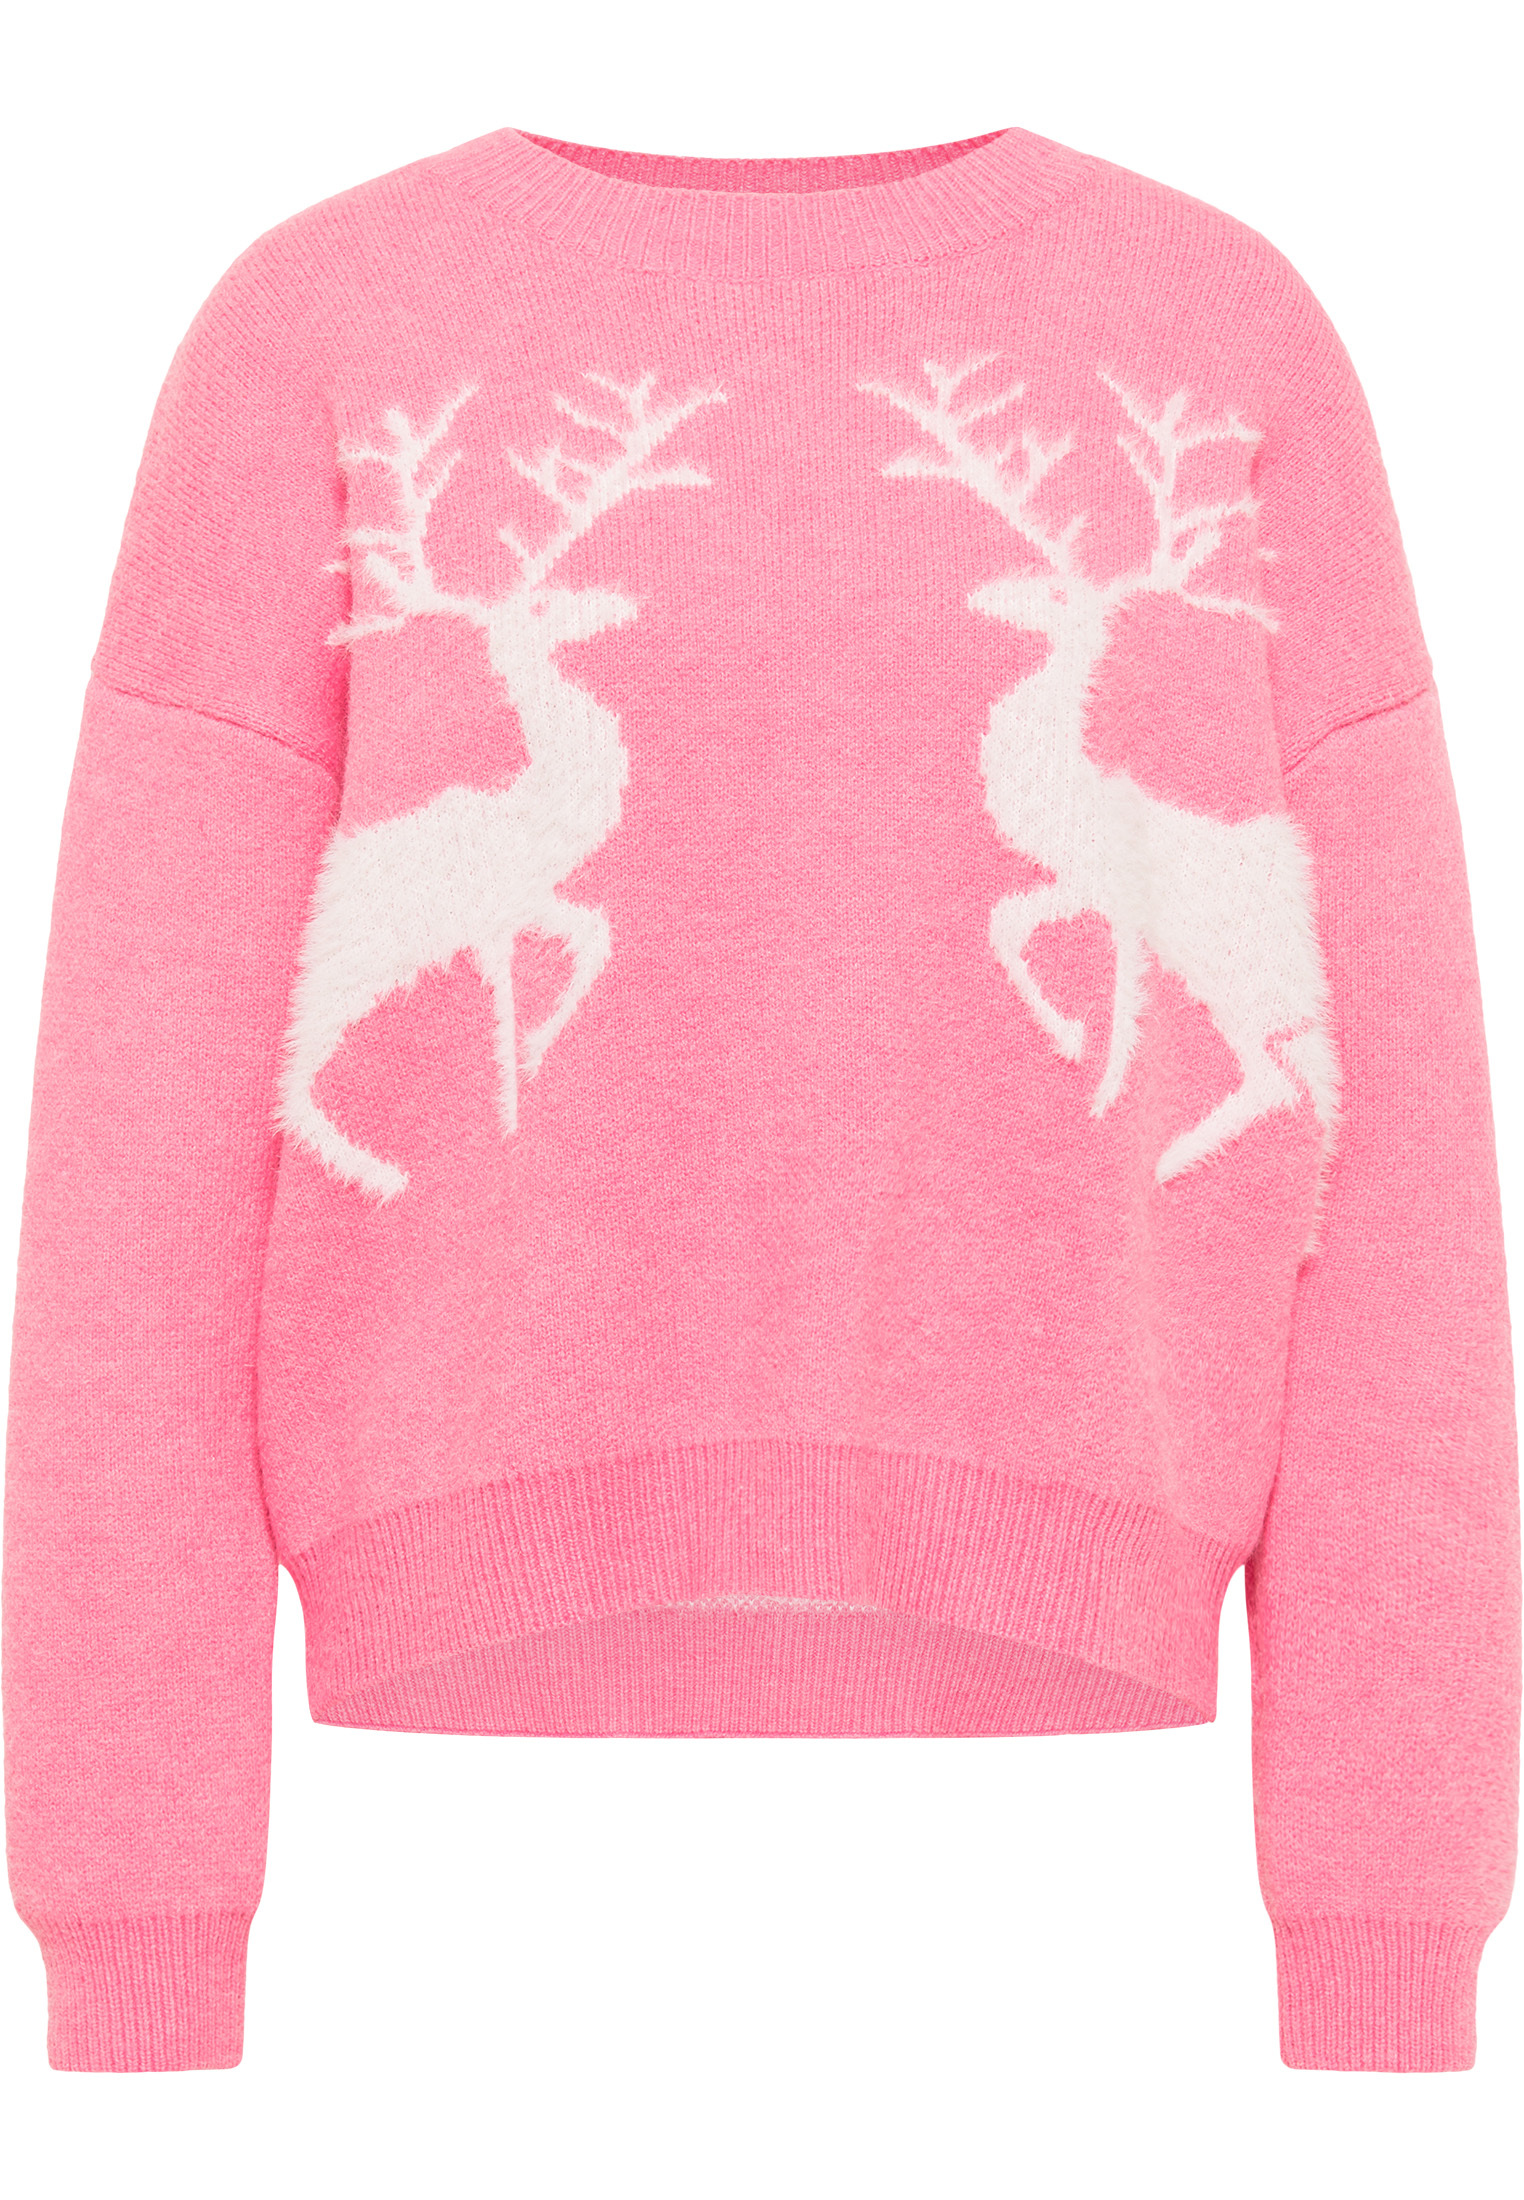 ybOSp Odzież MYMO Sweter w kolorze Różowym 